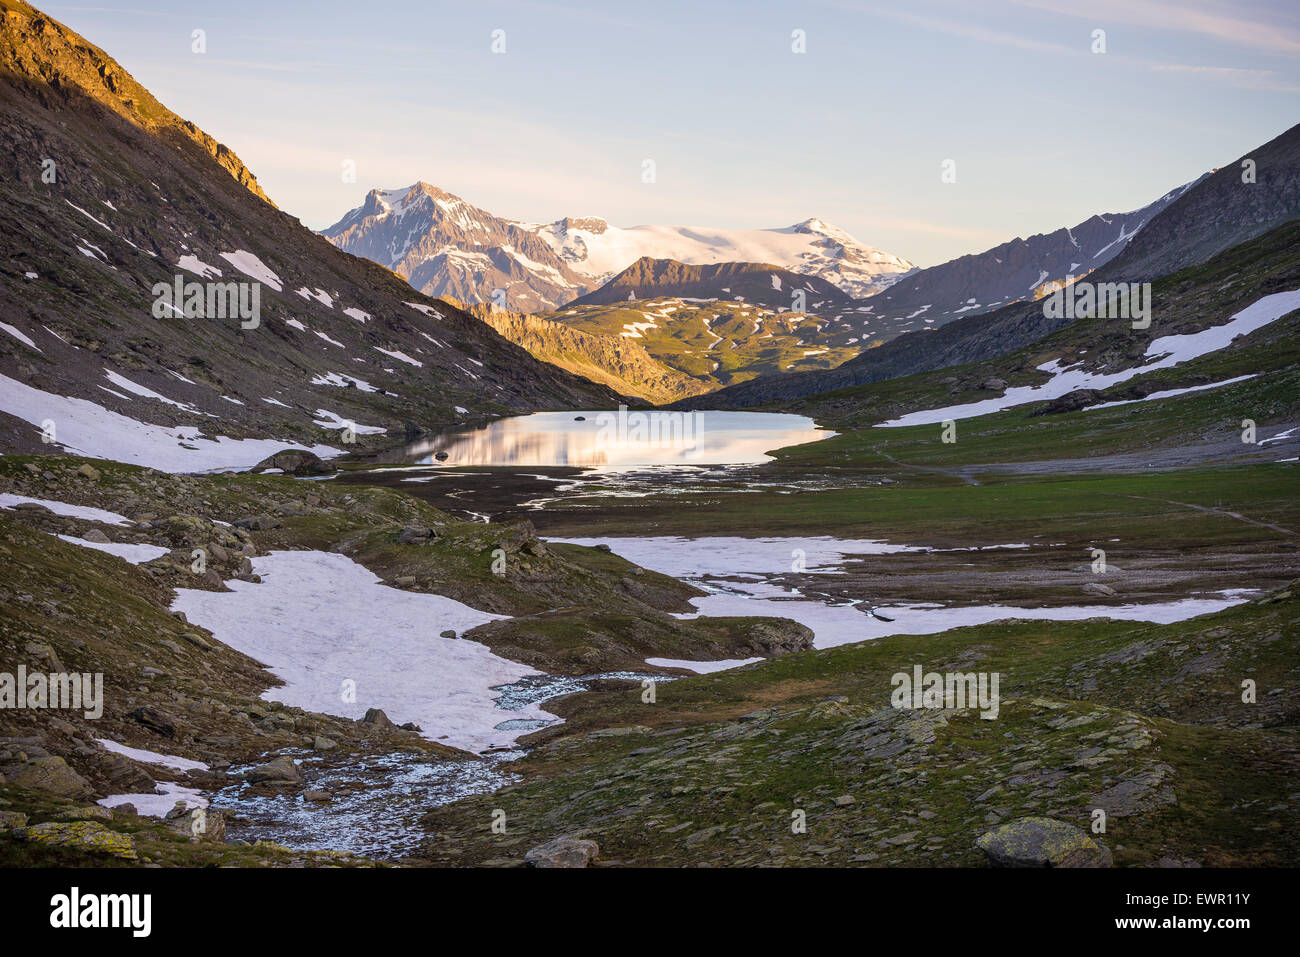 Alpina ad alta quota in lago idilliaco ambiente incontaminato una volta coperta da ghiacciai. Avventure estive nelle Alpi. Foto Stock